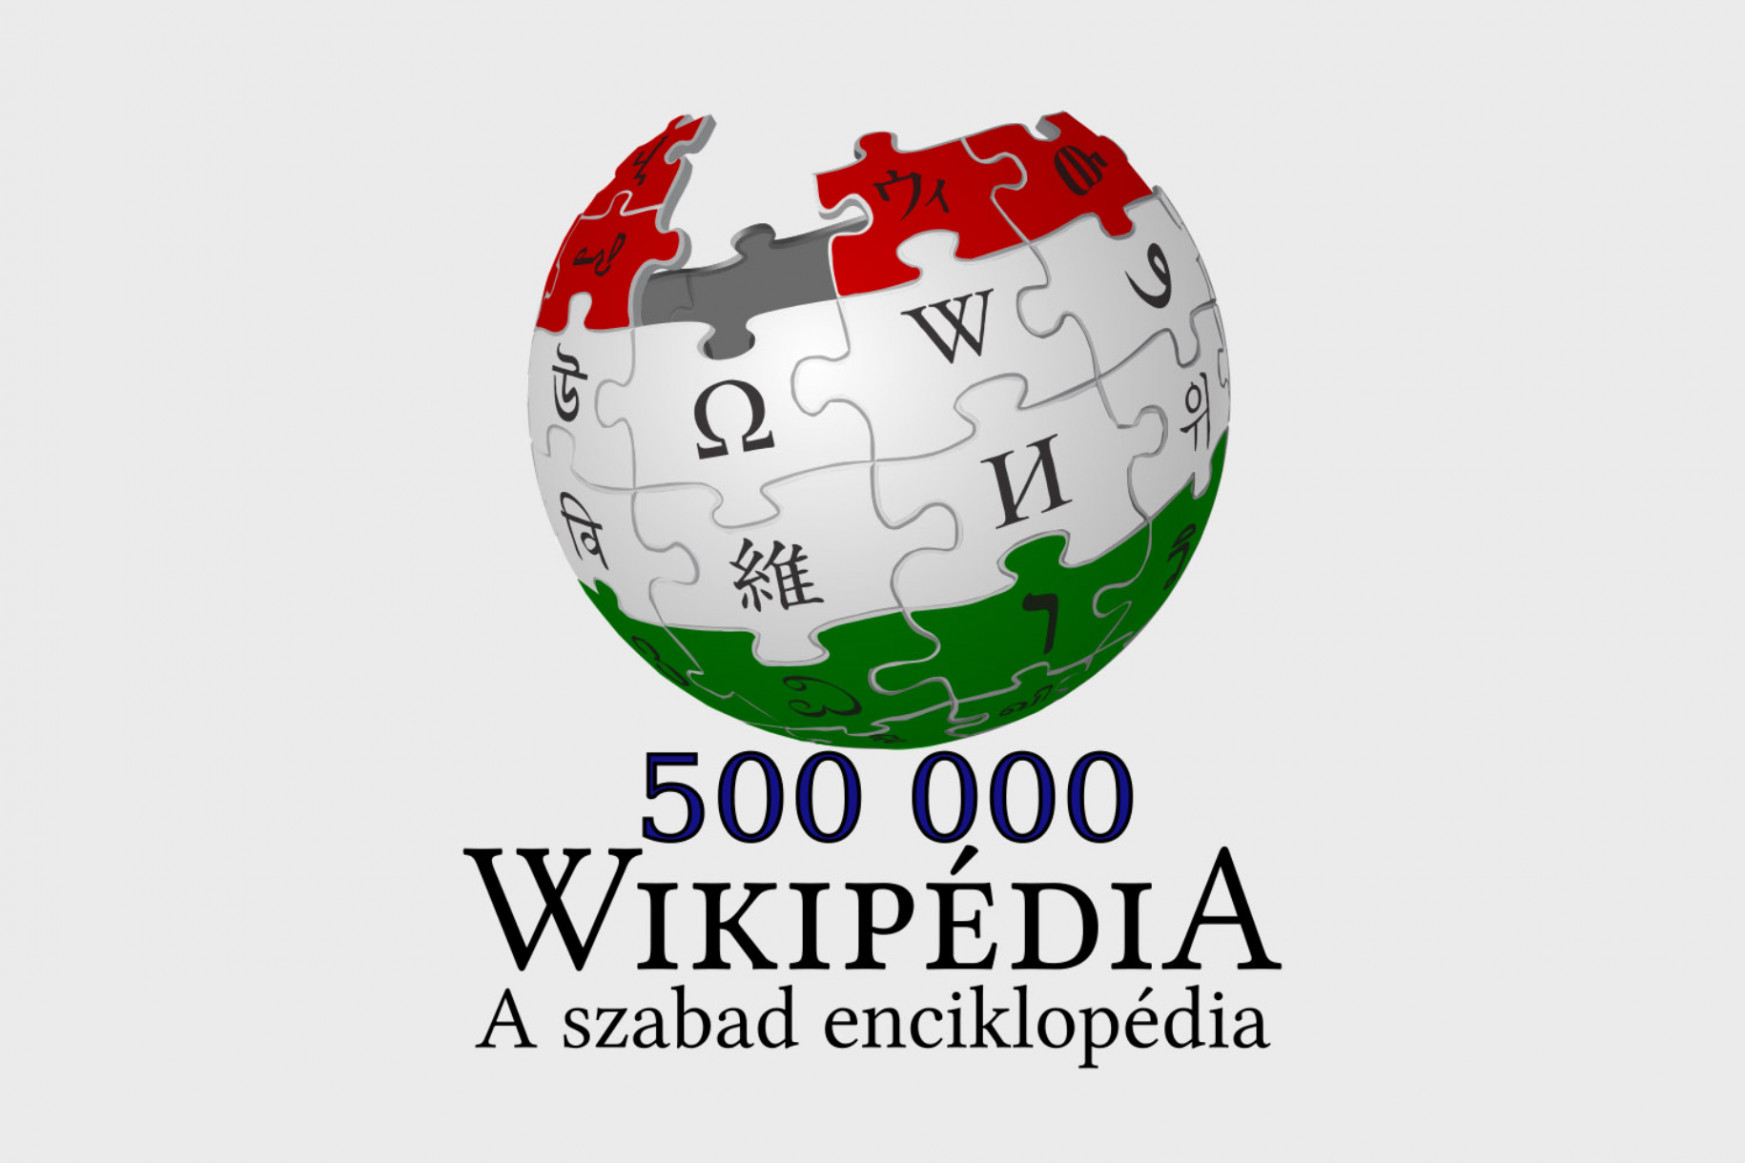 A magyar nyelvű Wikipédia elérte a félmilliomodik szócikkét, és világszinten a 26. legnagyobb szabad enciklopédia